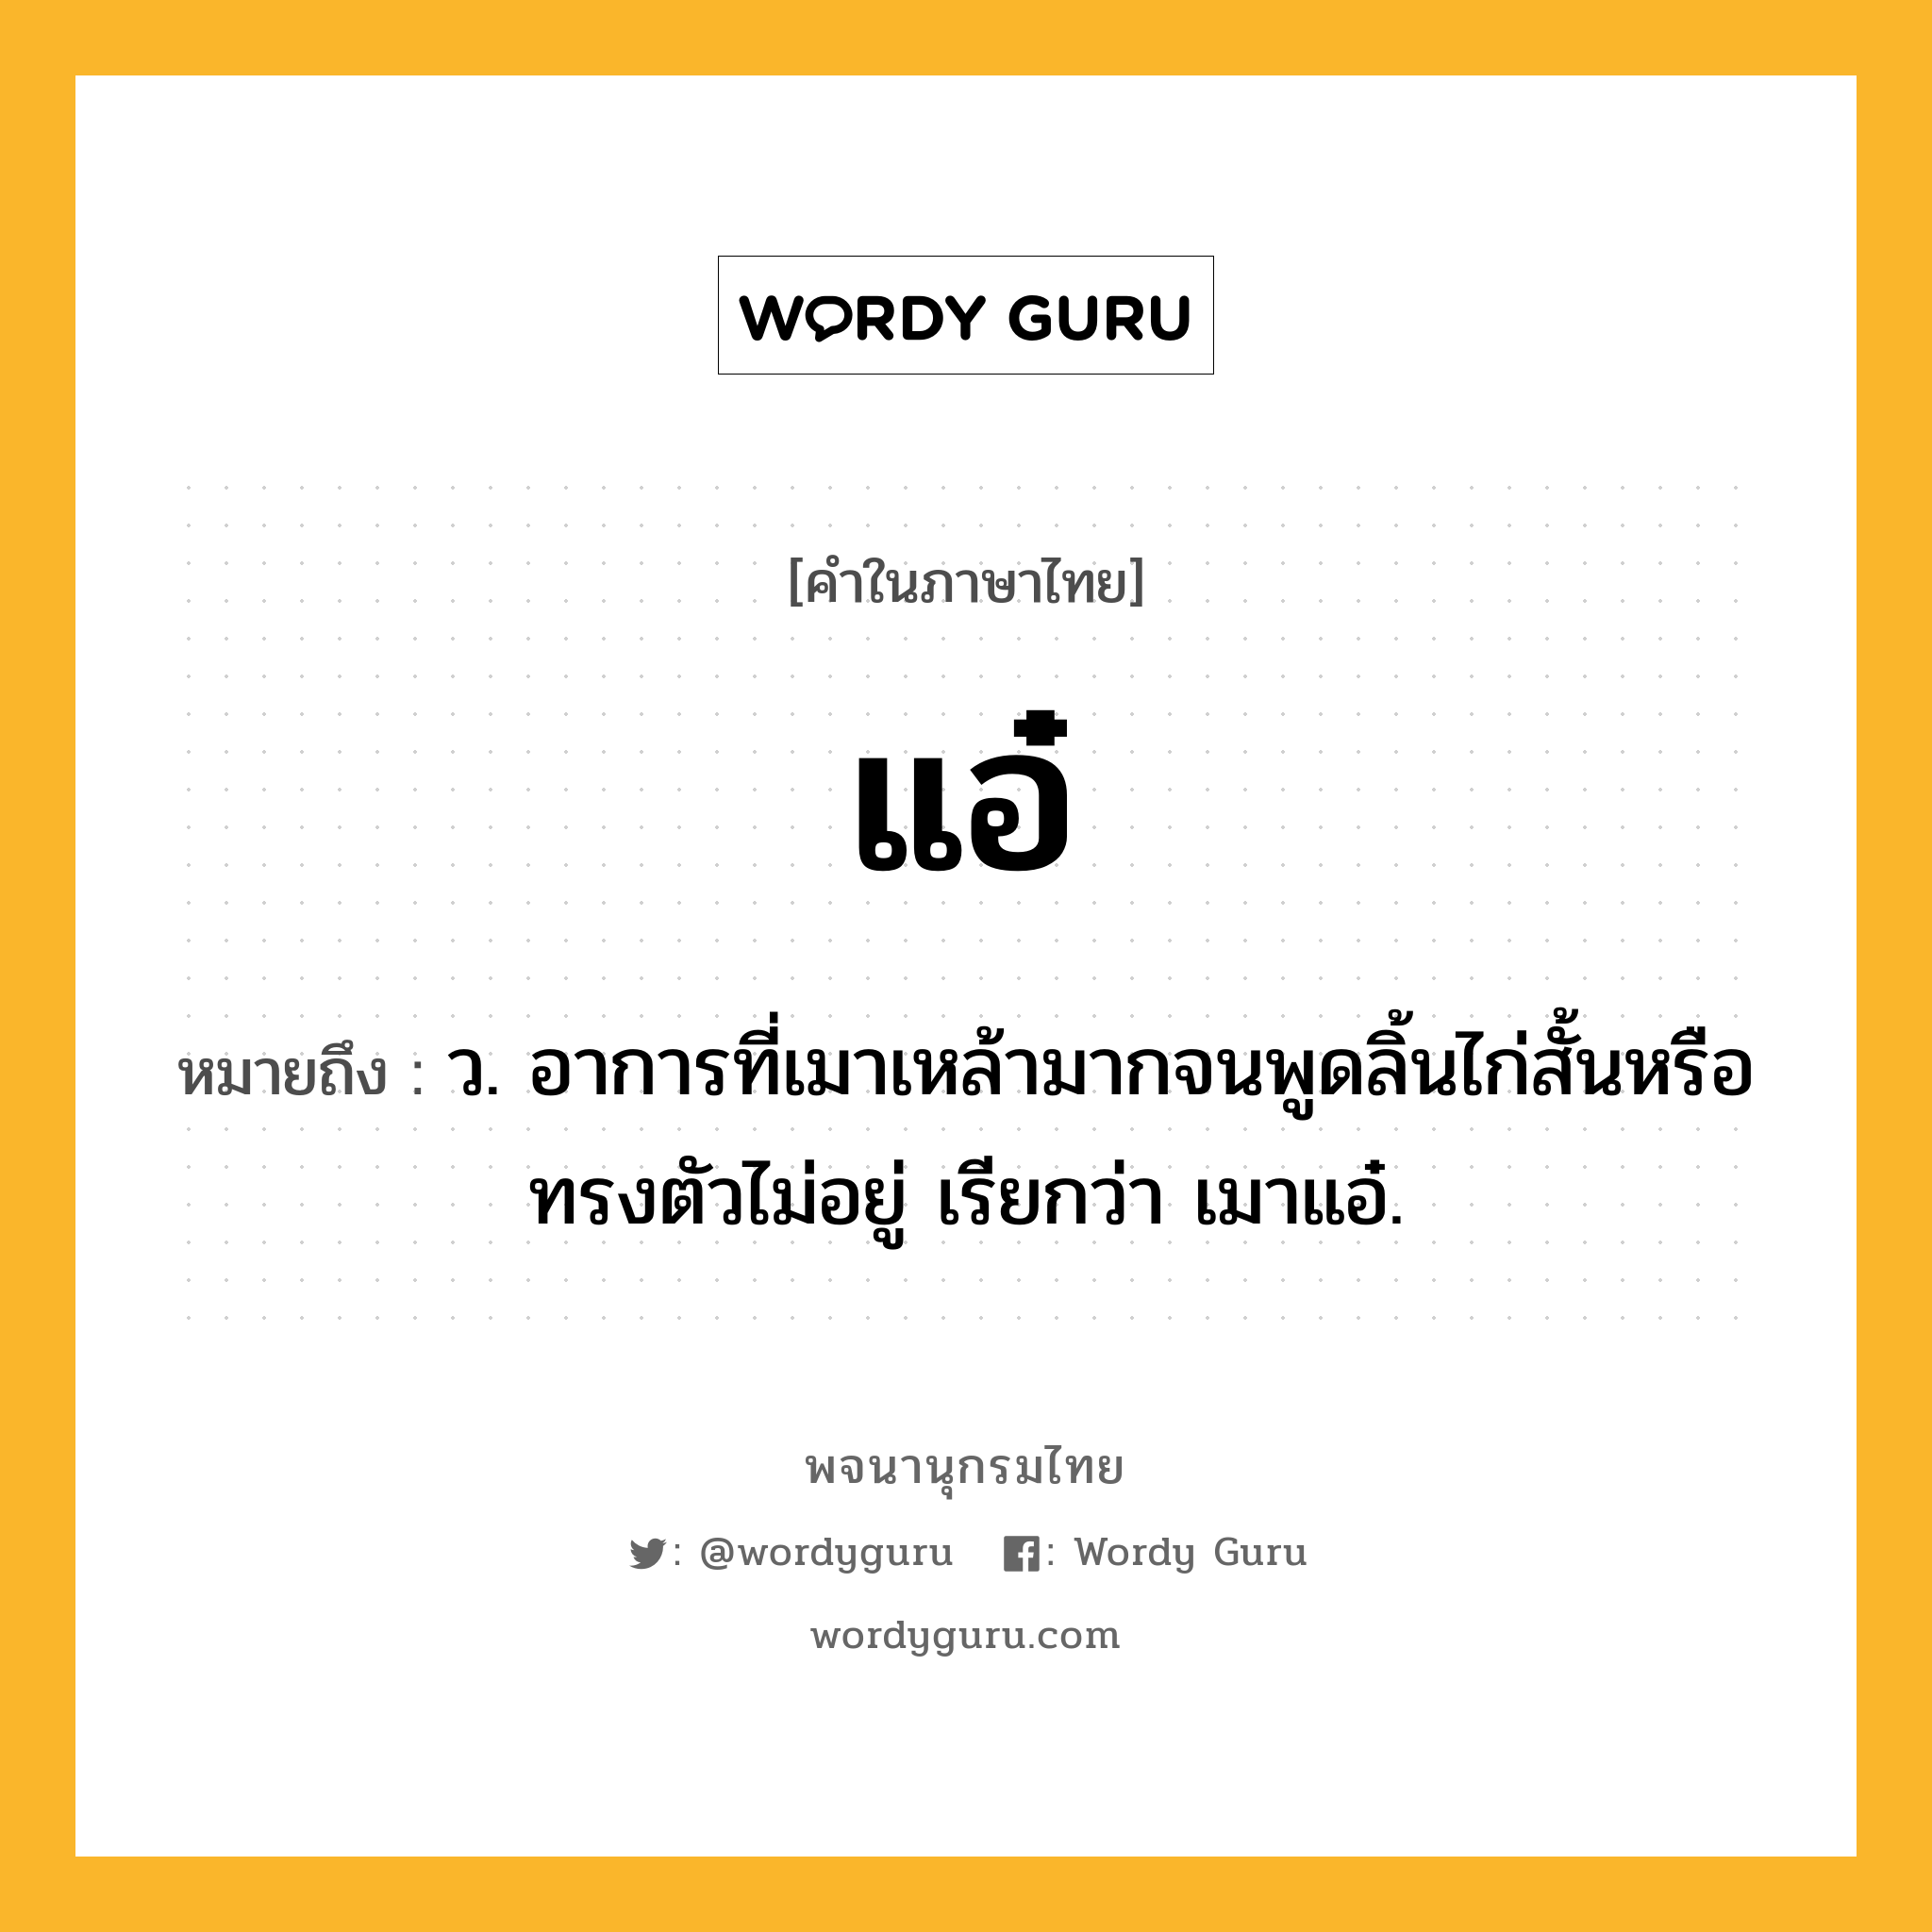 แอ๋ ความหมาย หมายถึงอะไร?, คำในภาษาไทย แอ๋ หมายถึง ว. อาการที่เมาเหล้ามากจนพูดลิ้นไก่สั้นหรือทรงตัวไม่อยู่ เรียกว่า เมาแอ๋.